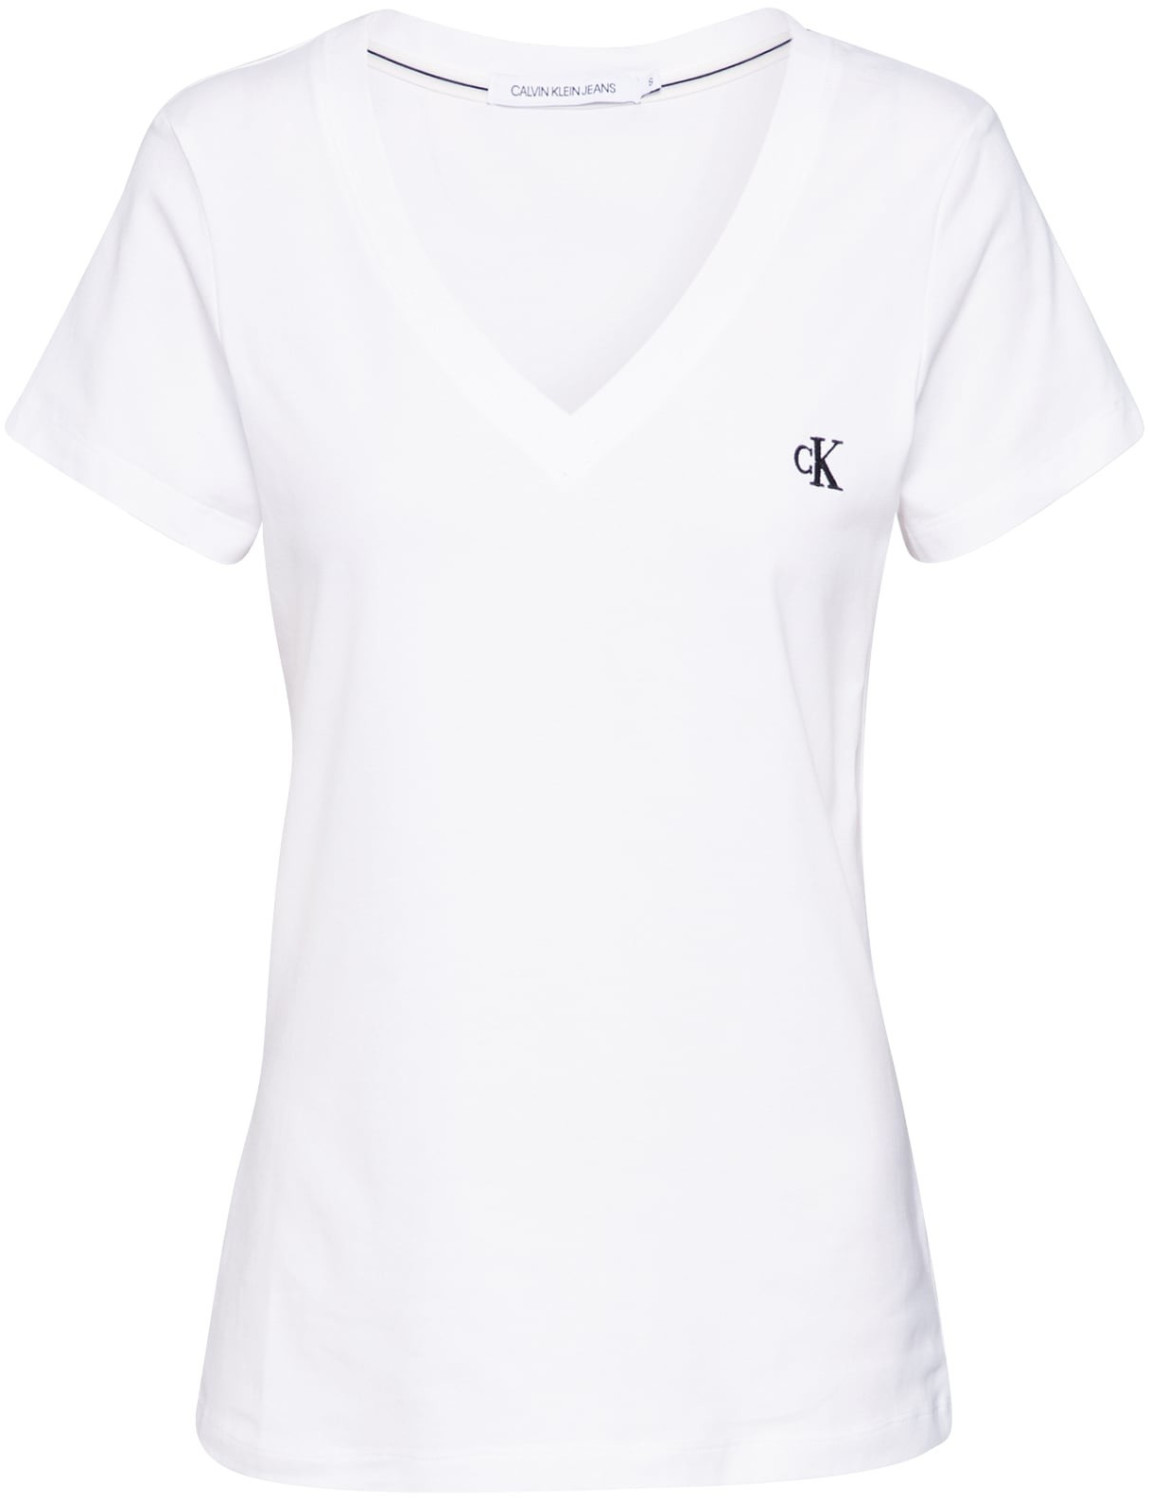 € Calvin | Klein ab Embroidery T-Shirt Preisvergleich 23,12 (J20J213716) bei